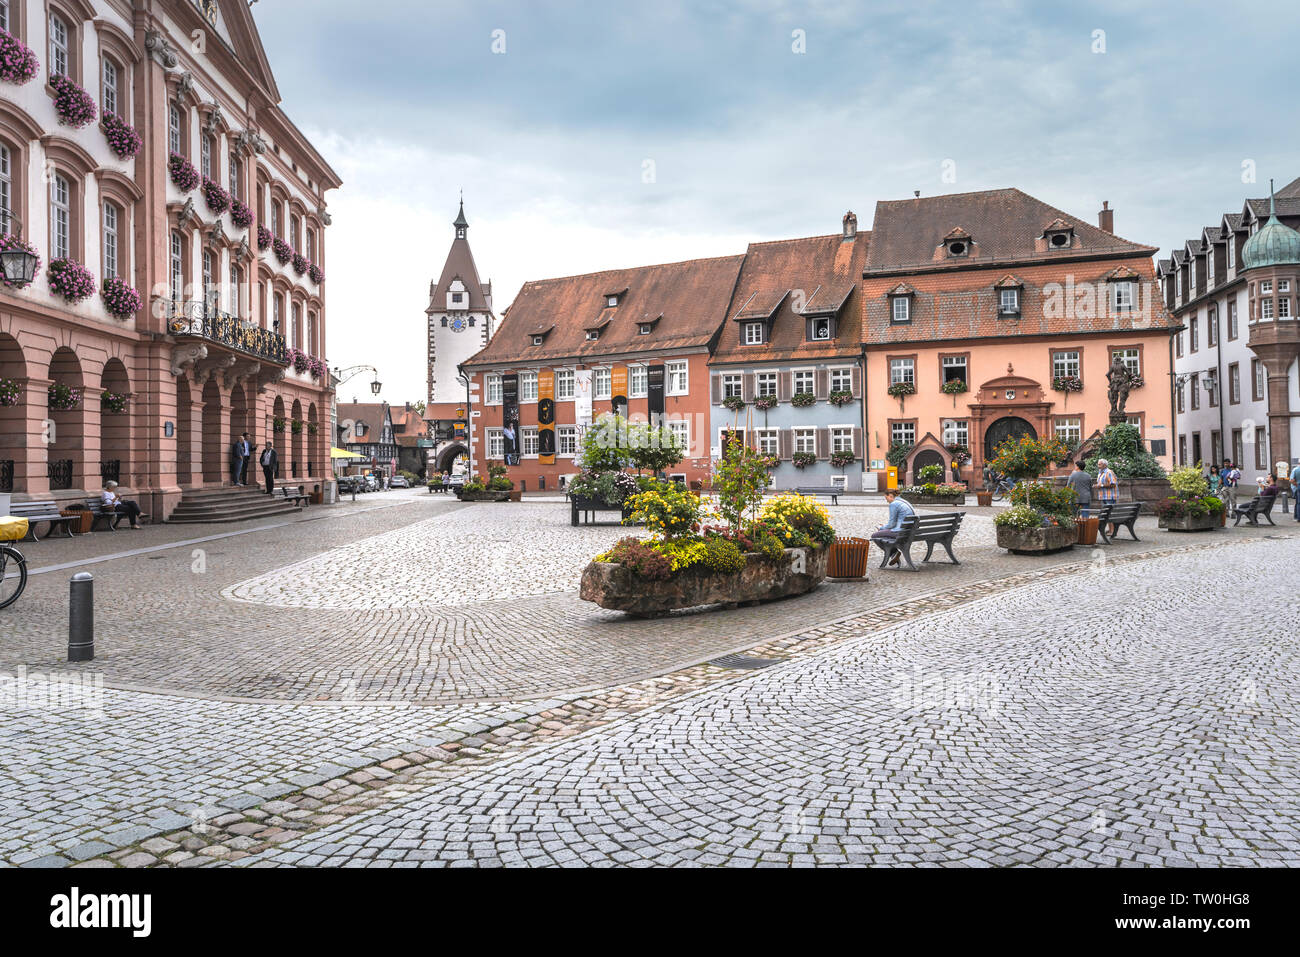 Platz mit Rathaus in Gengenbach, Schwarzwald, Deutschland, historische Stadt und Reiseziel Stockfoto